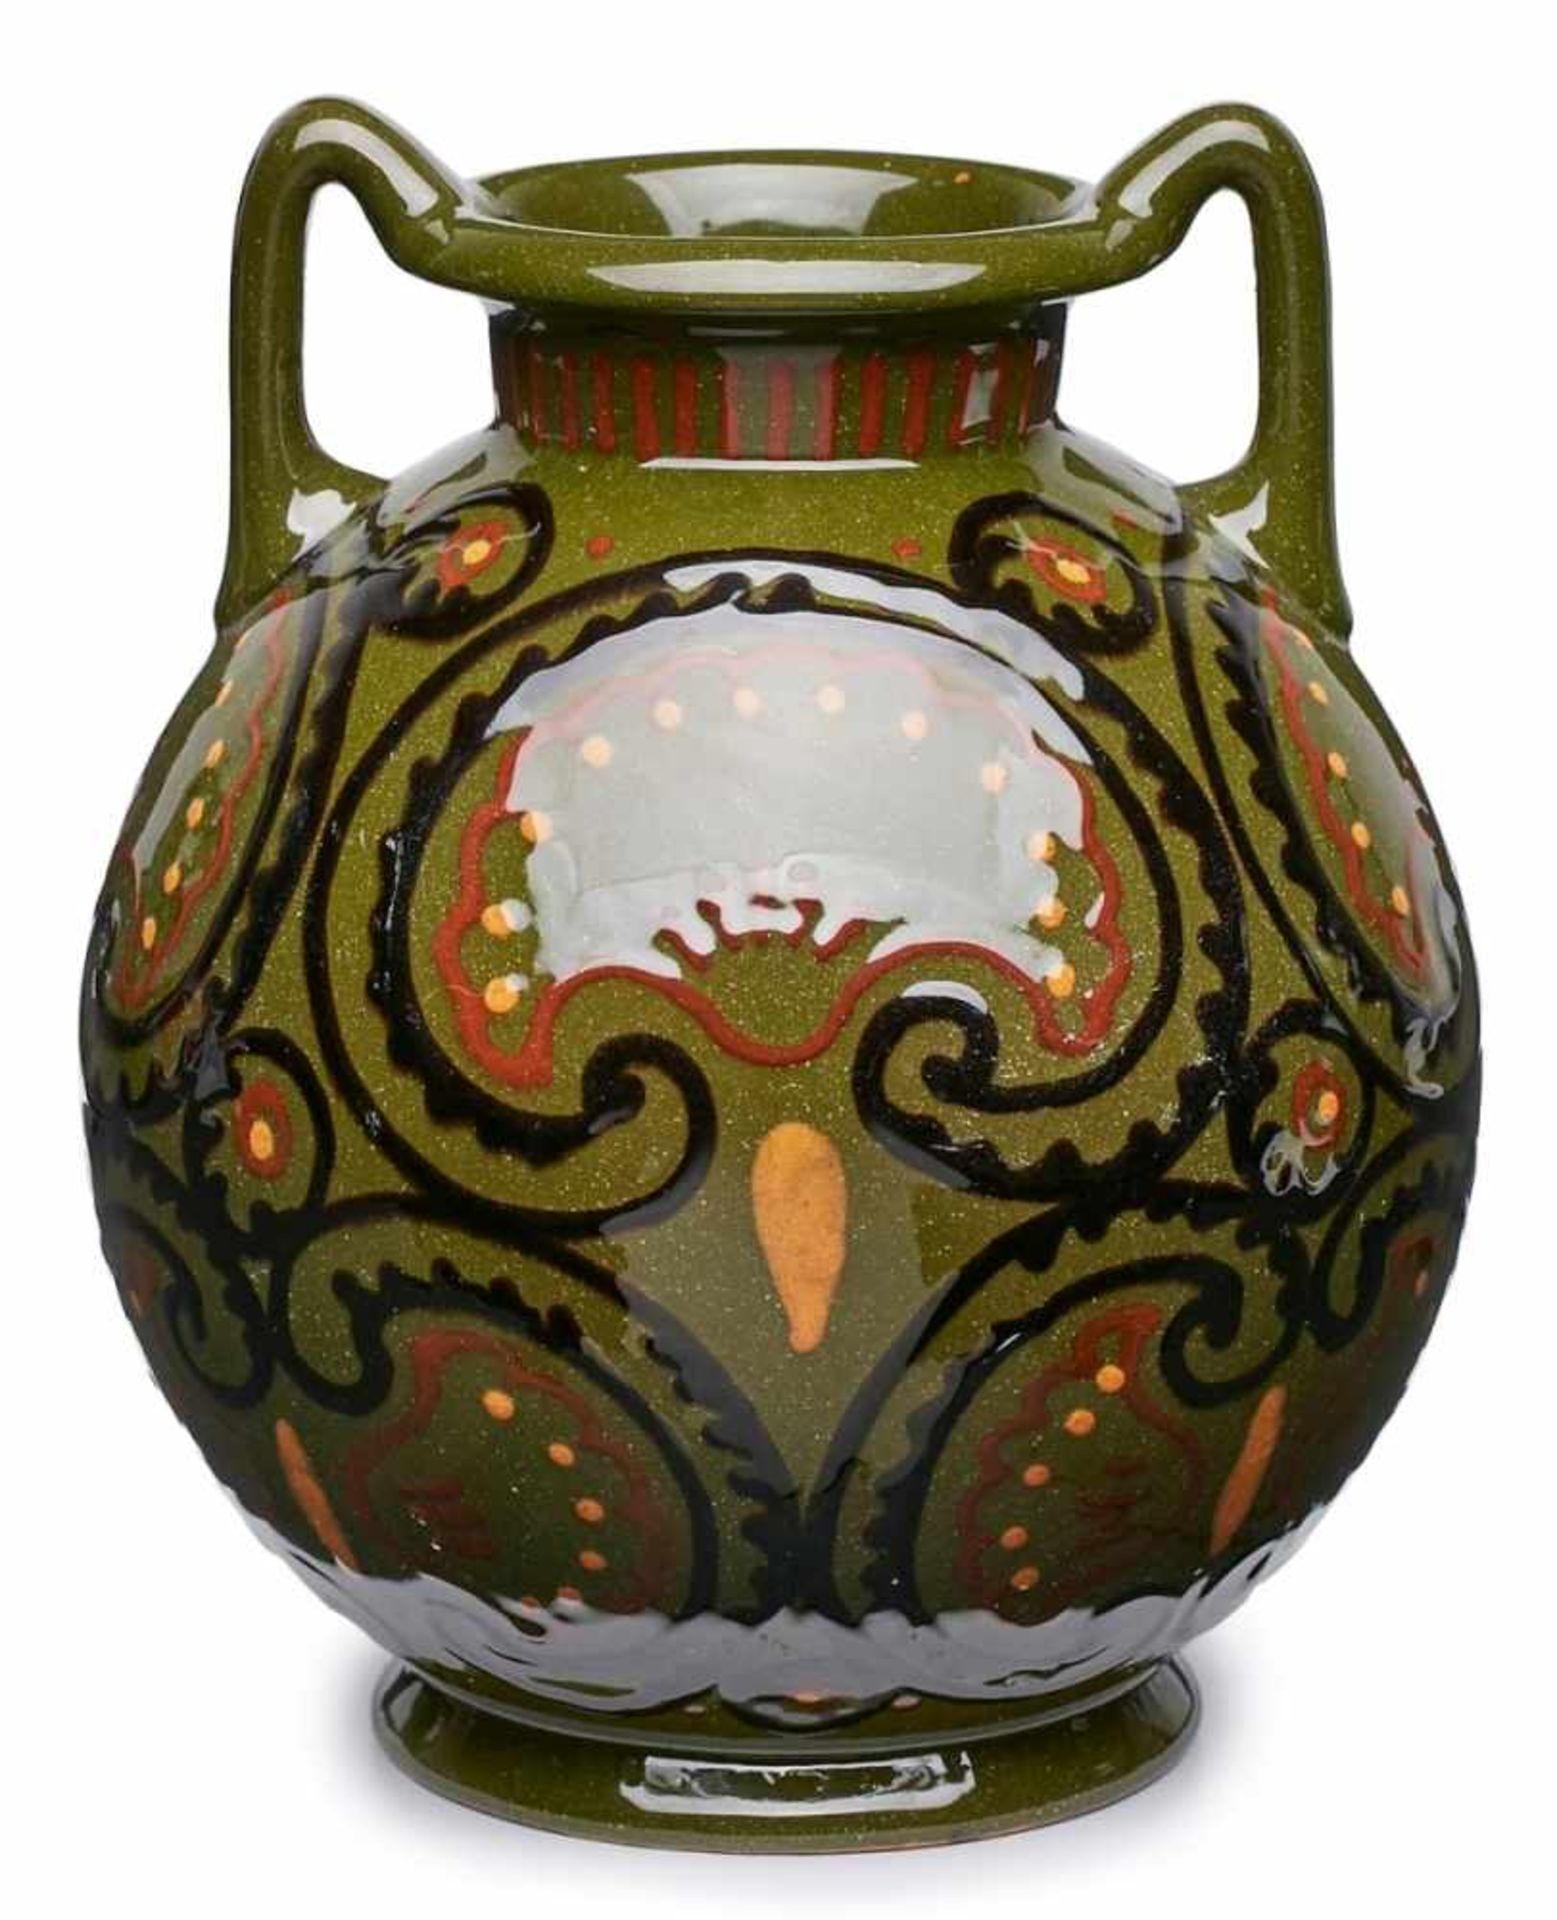 Kugelige Vase mit Henkeln,Karlsruhe um 1910. Roter Scherben, grün glasiert u. rot/ orange/ schwarz